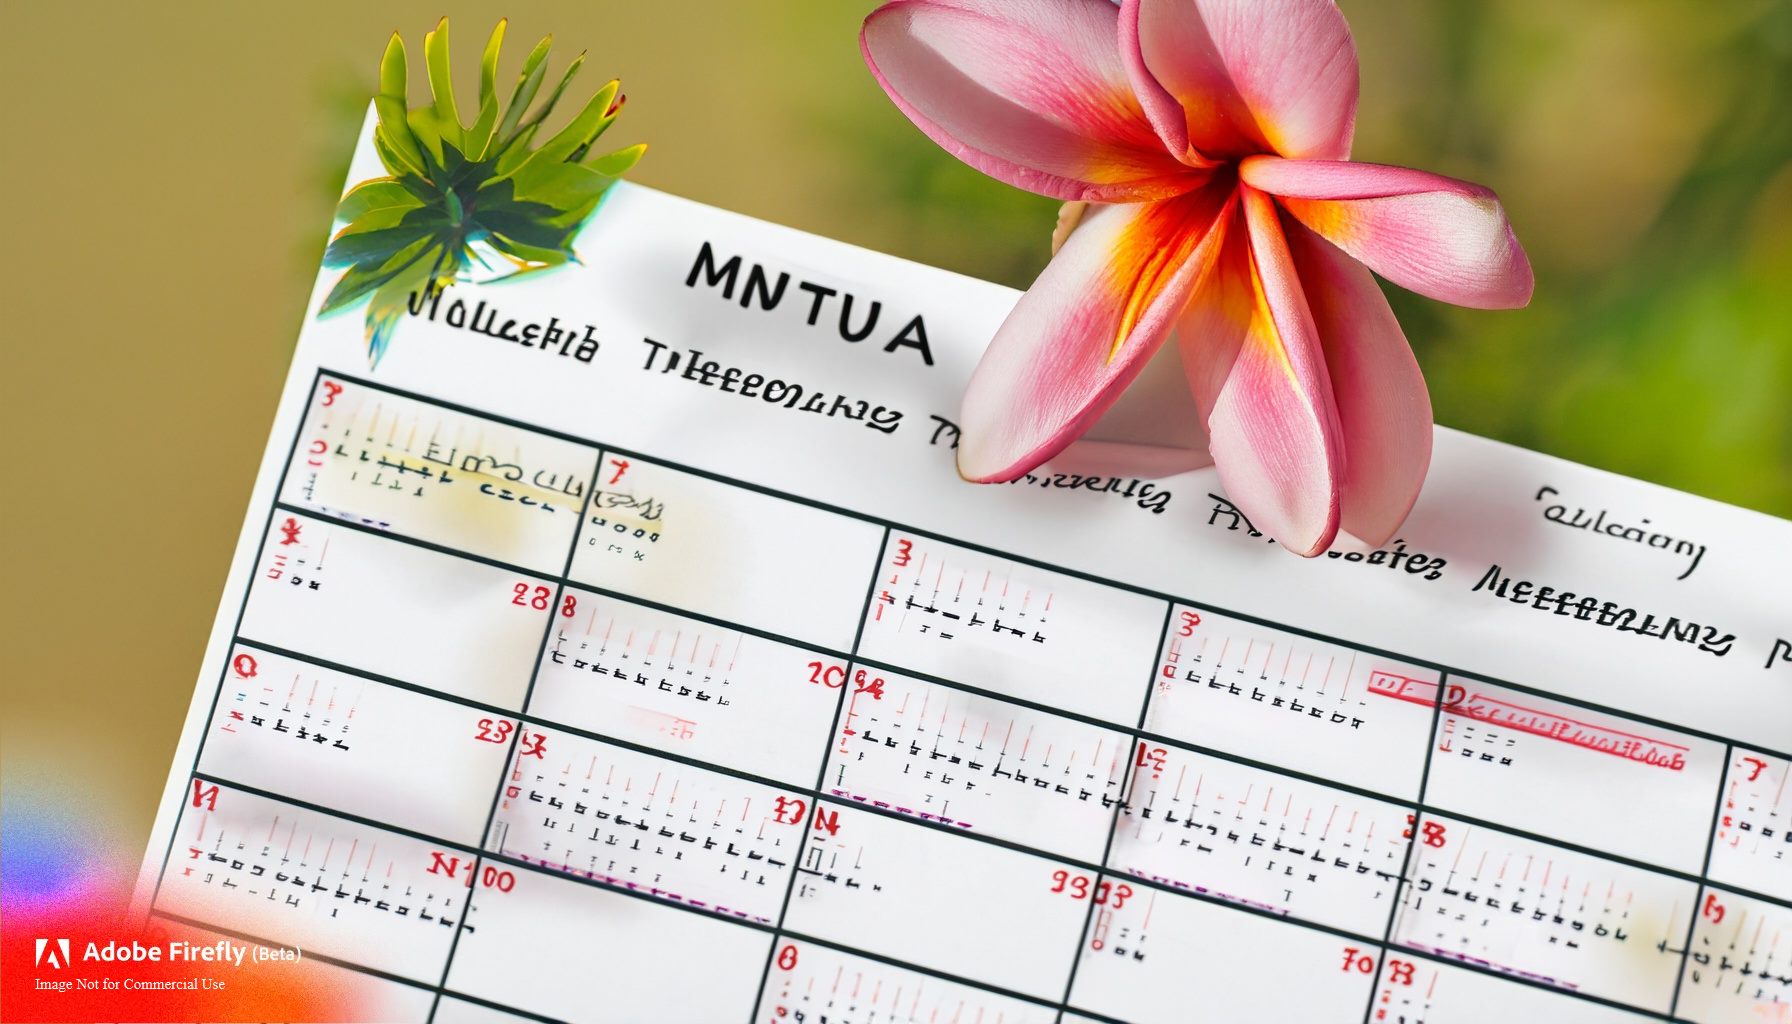 Plumeria Care Calendar